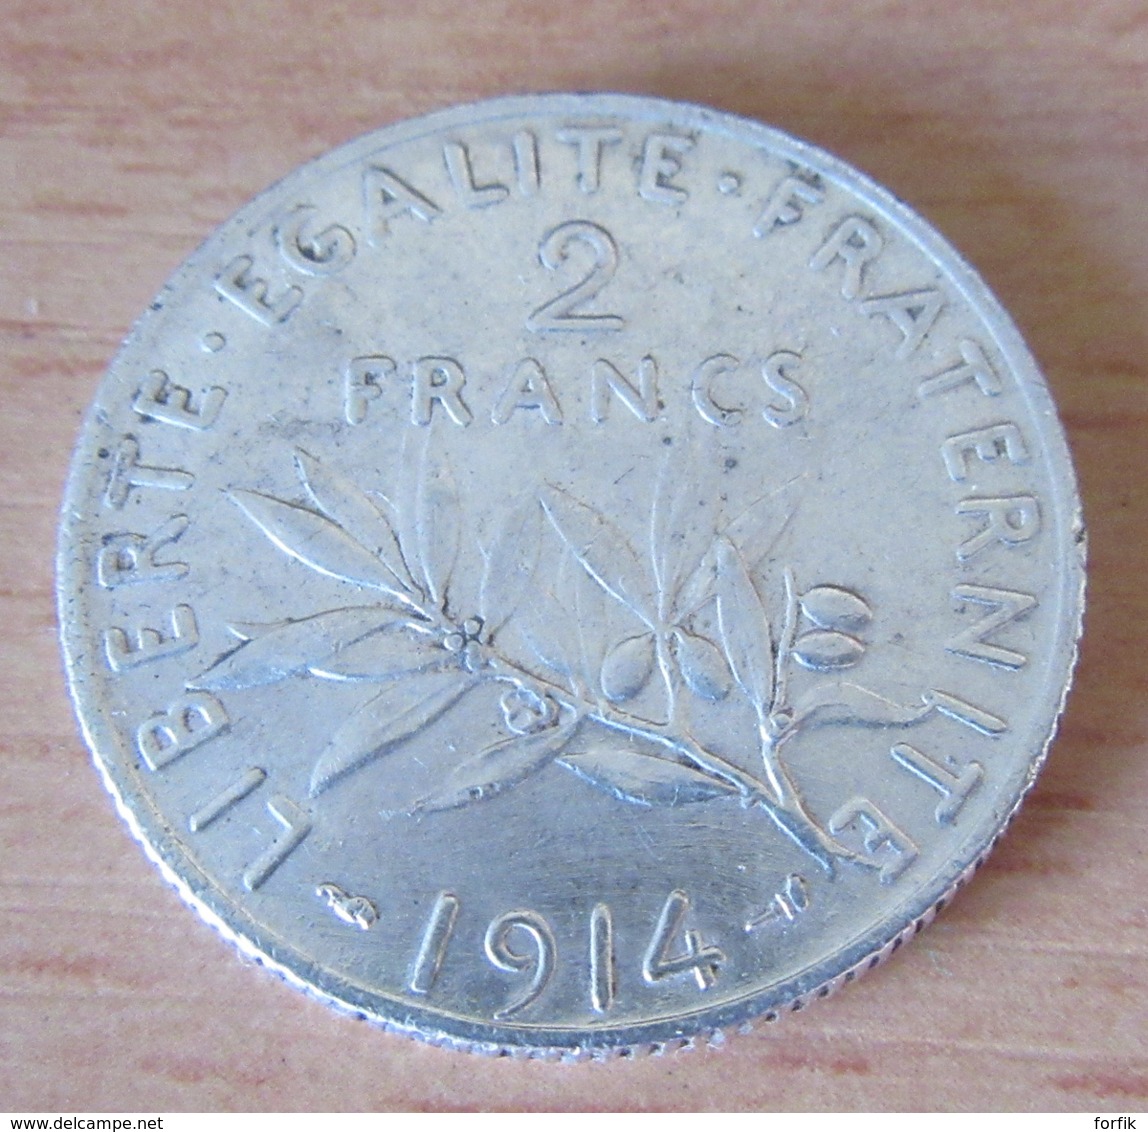 France - 5 Monnaies 2 Francs Semeuse Argent 1898 à 1914 - TB à SUP - Achat immédiat